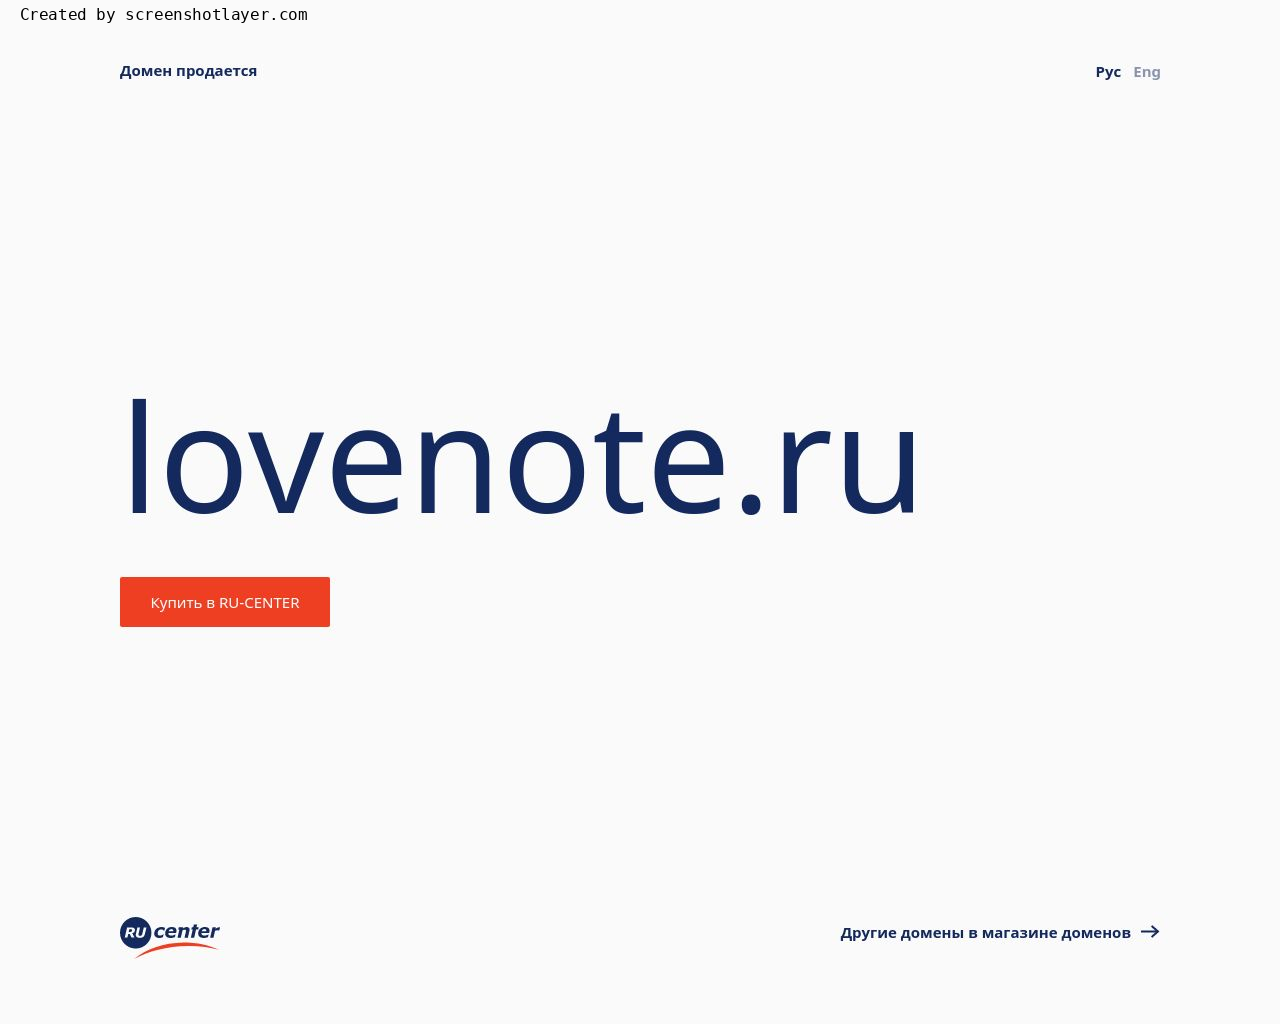 Изображение сайта lovenote.ru в разрешении 1280x1024